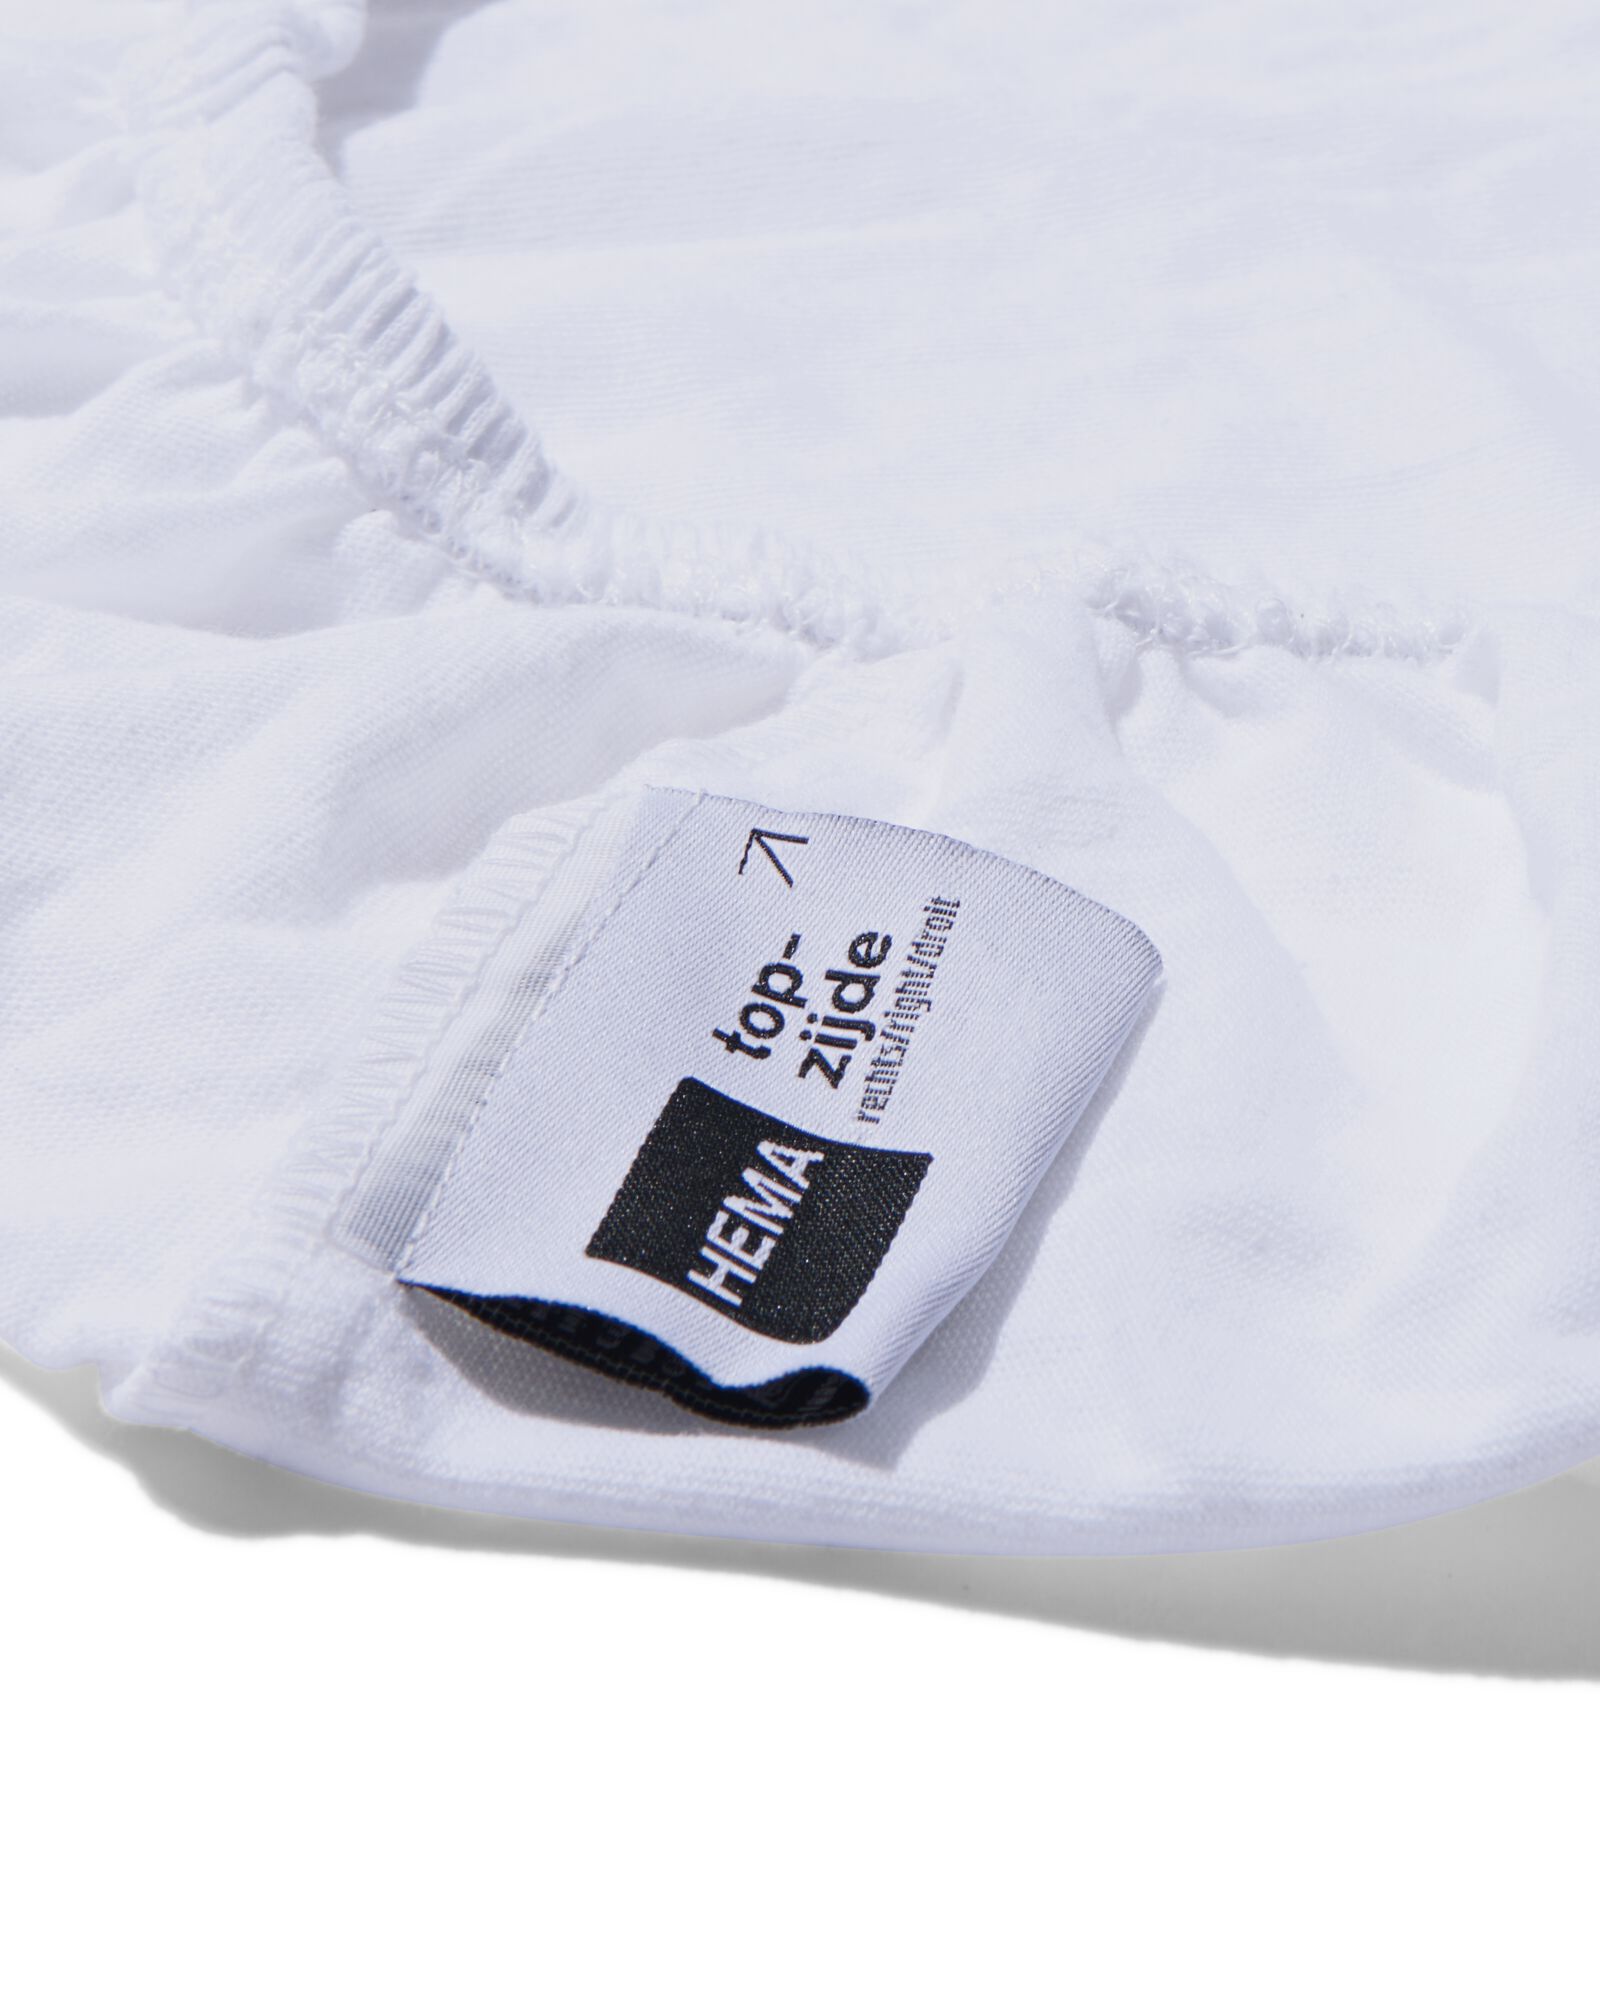 drap-housse pour surmatelas jersey 90x200 blanc - 5190111 - HEMA